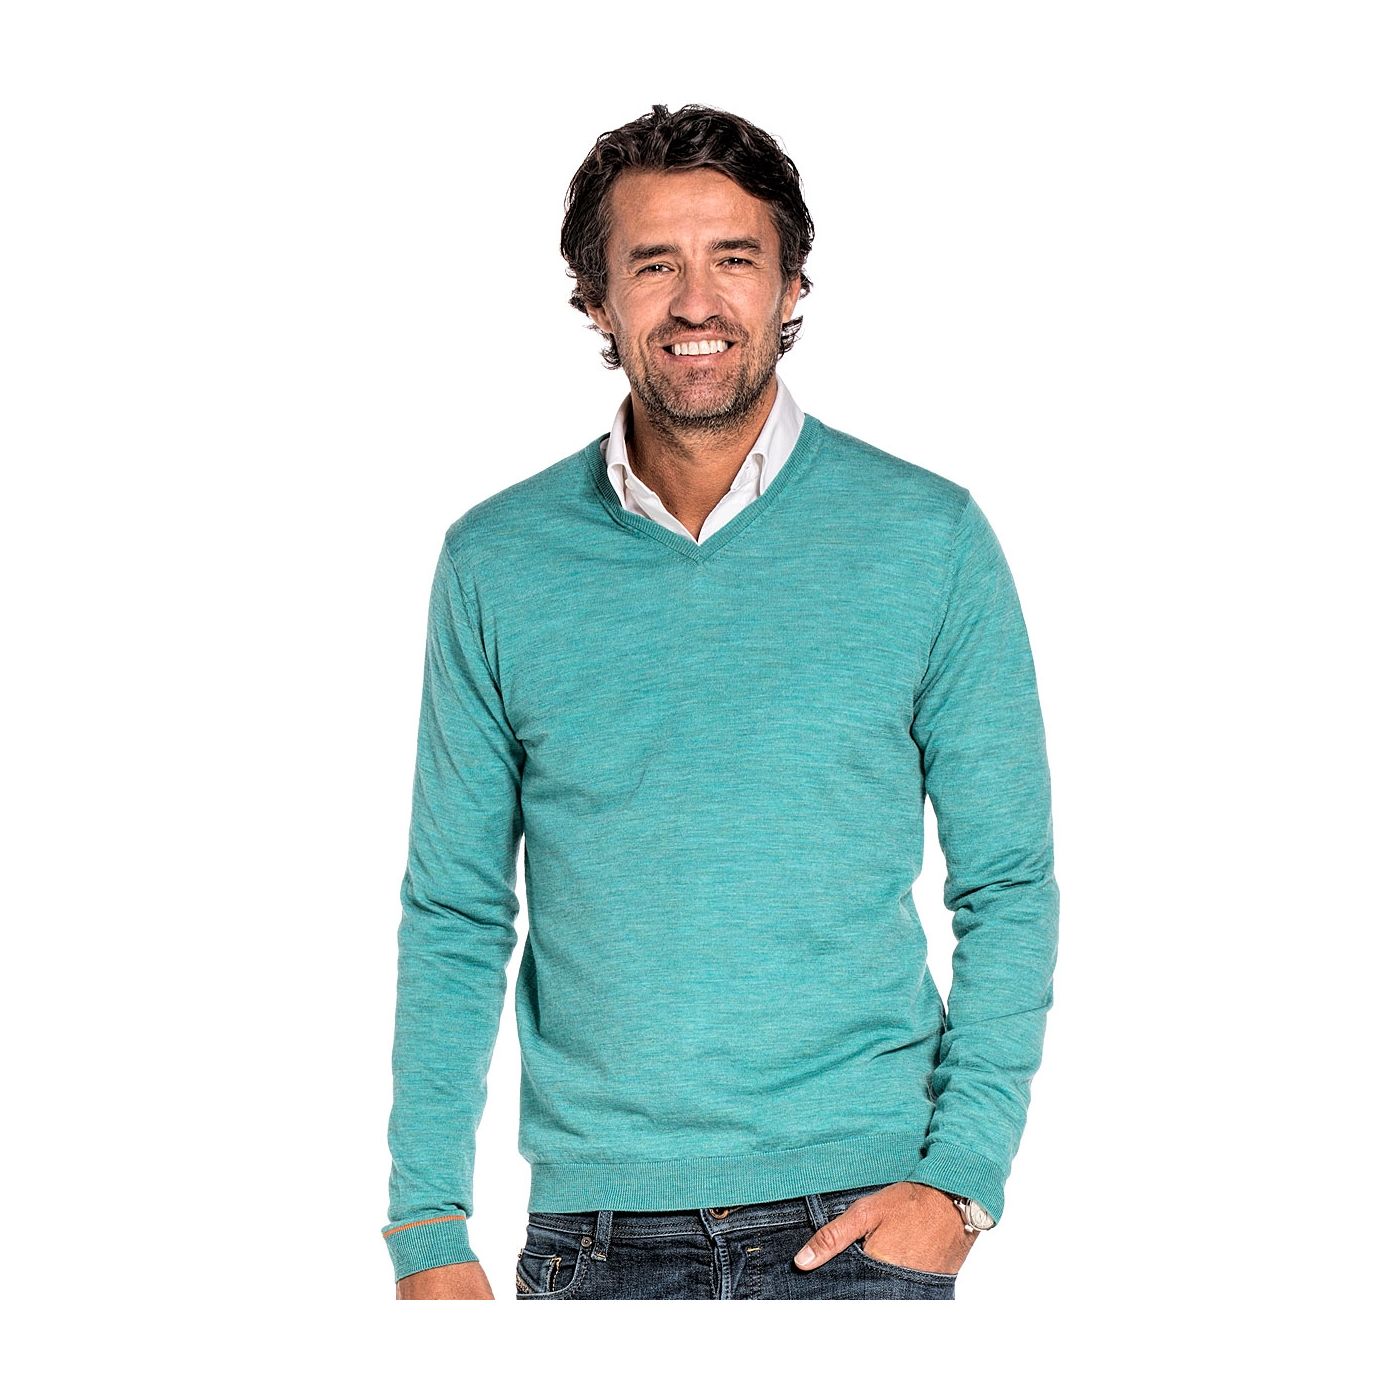 V-Neck sweater for men made of Merino wool in Blue green